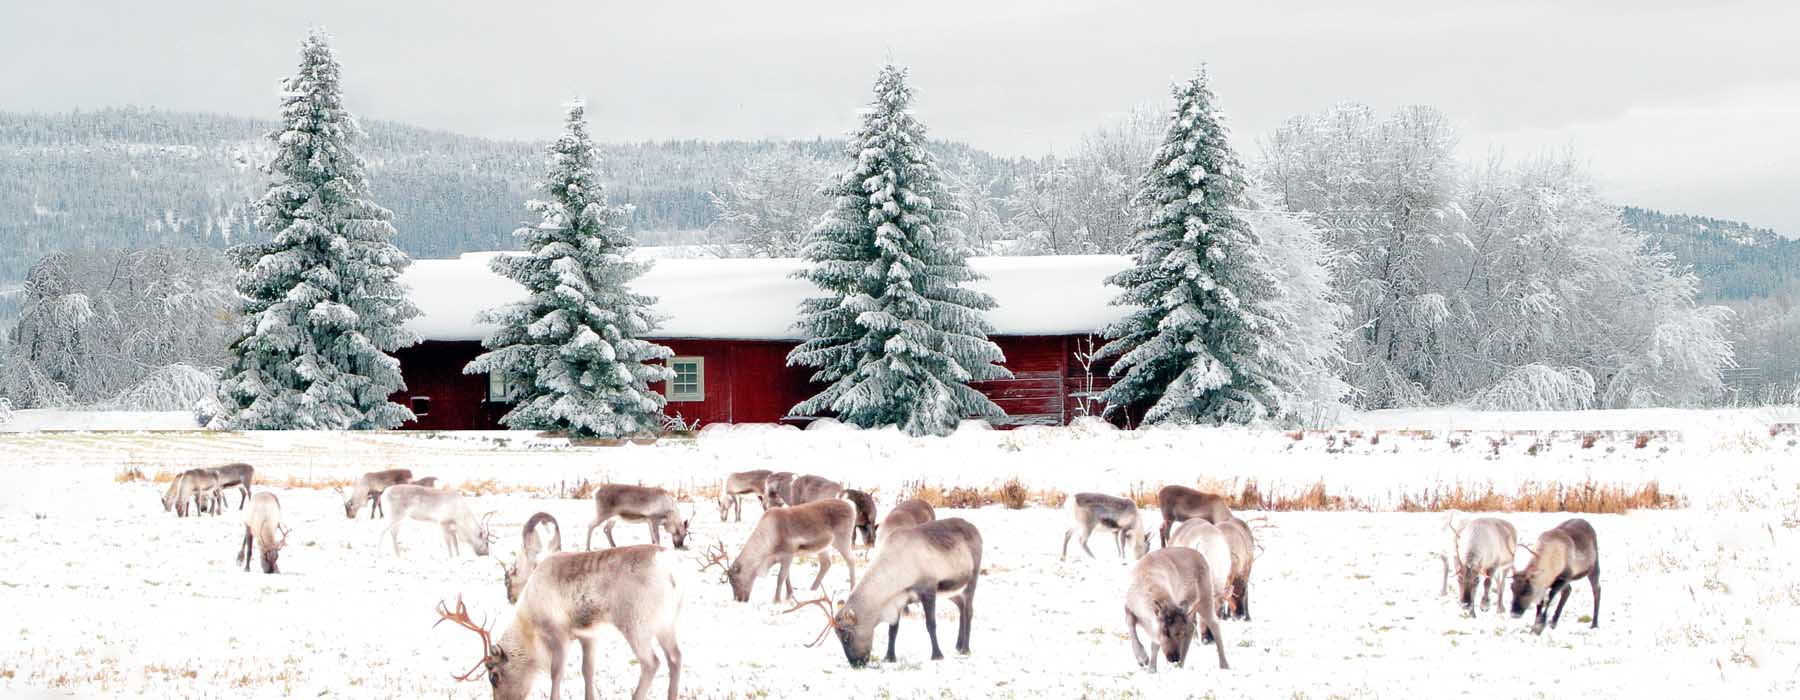 Finland<br class="hidden-md hidden-lg" /> Christmas Holidays